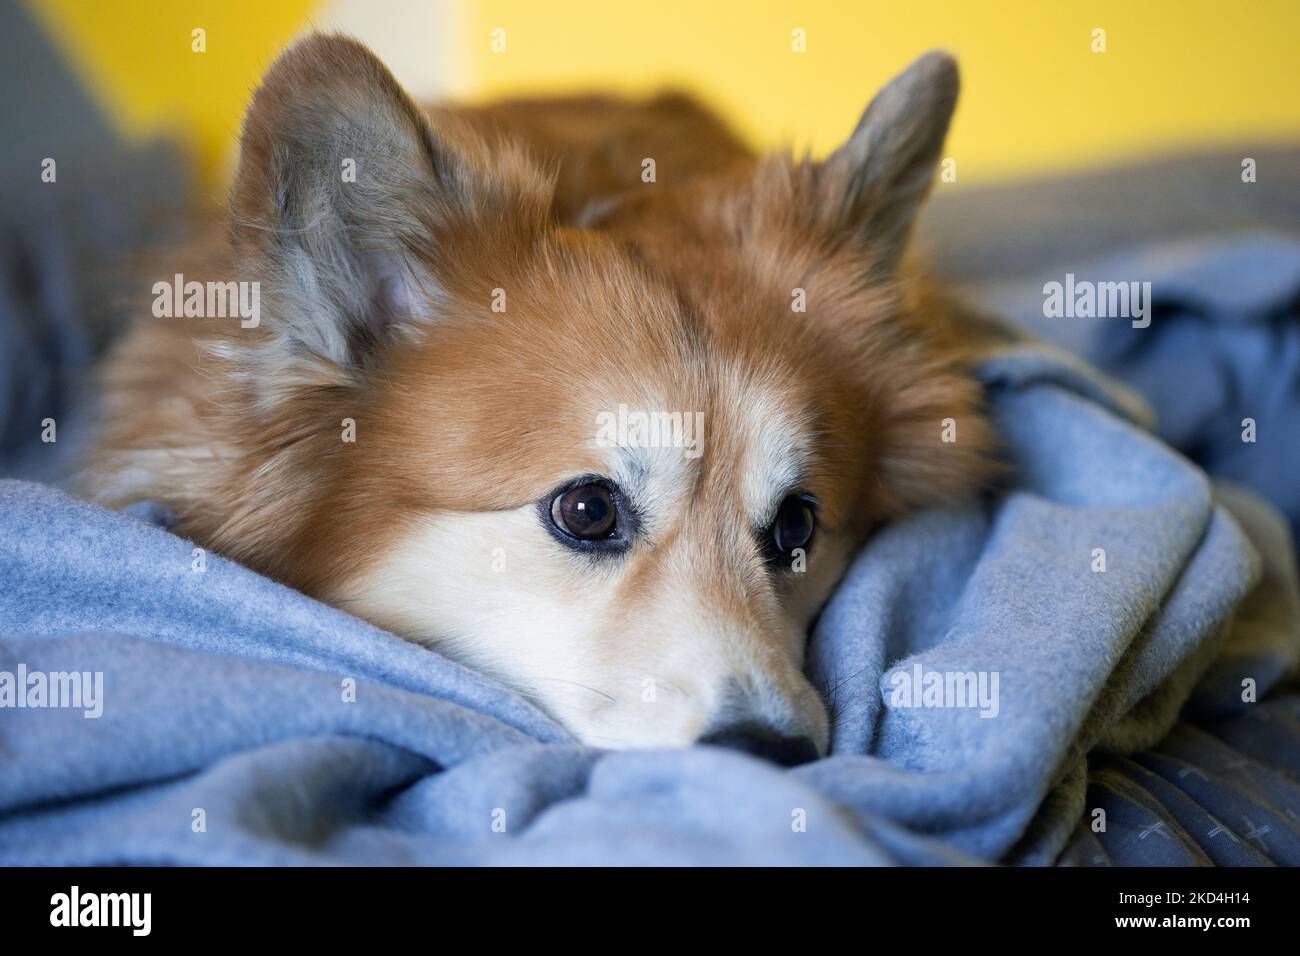 gros plan portrait corgi peluche chien allongé sur une couverture Banque D'Images